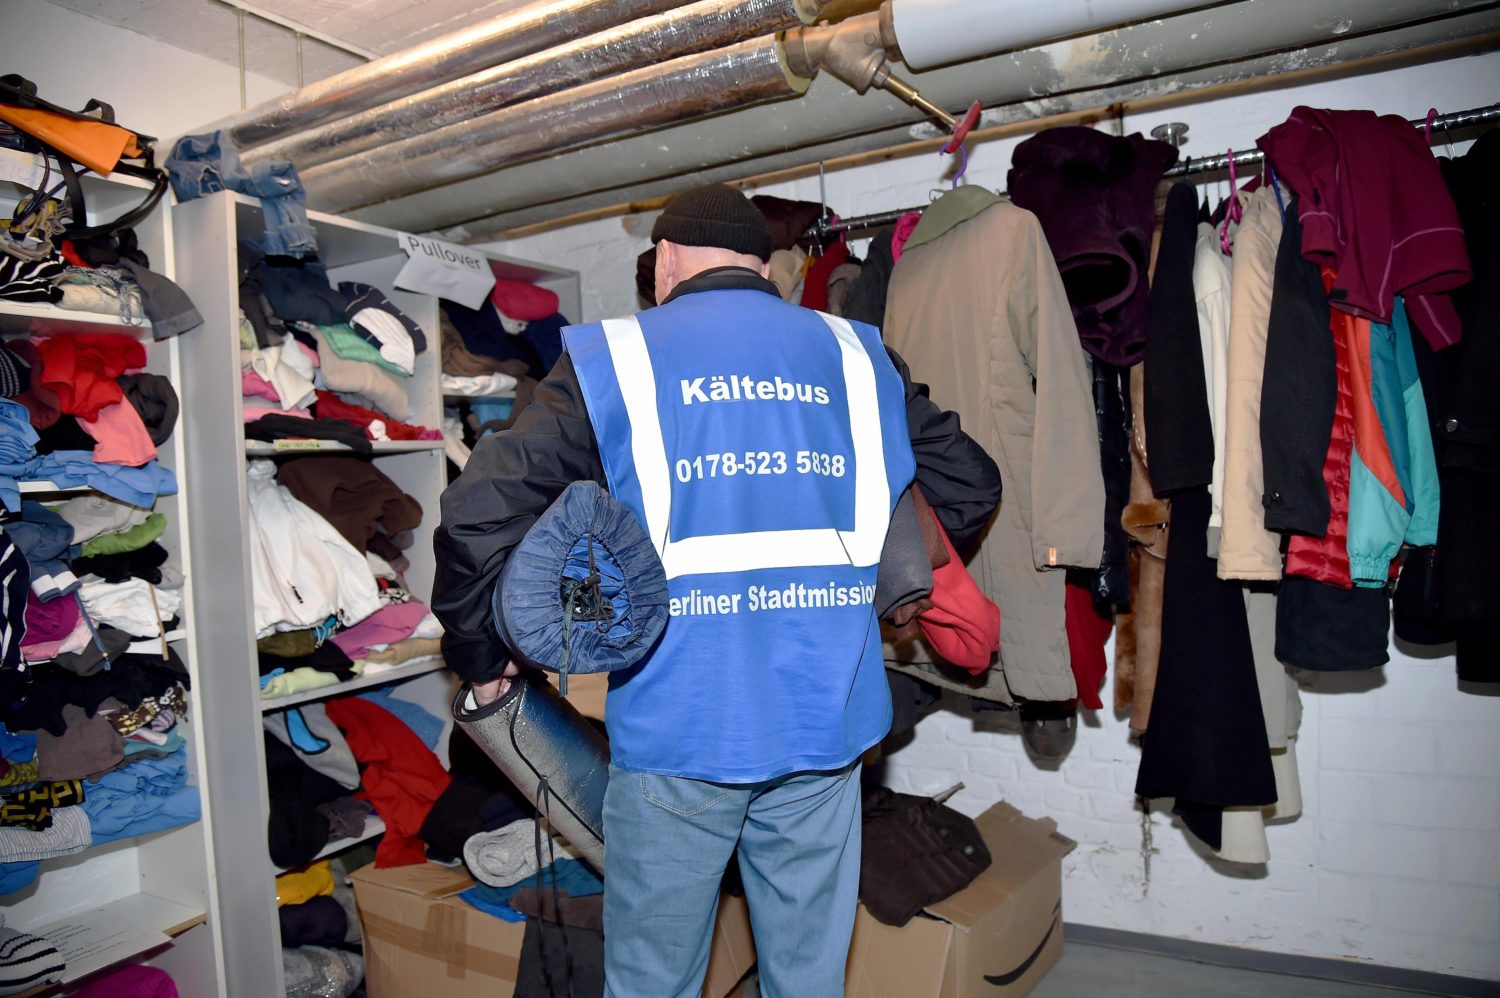 Obdachlosen helfen in Berlin: Spendenübergabe einer Kleiderkammer an einen Mitarbeiter des Kältebusses. Foto: Imago Images/Revierfoto